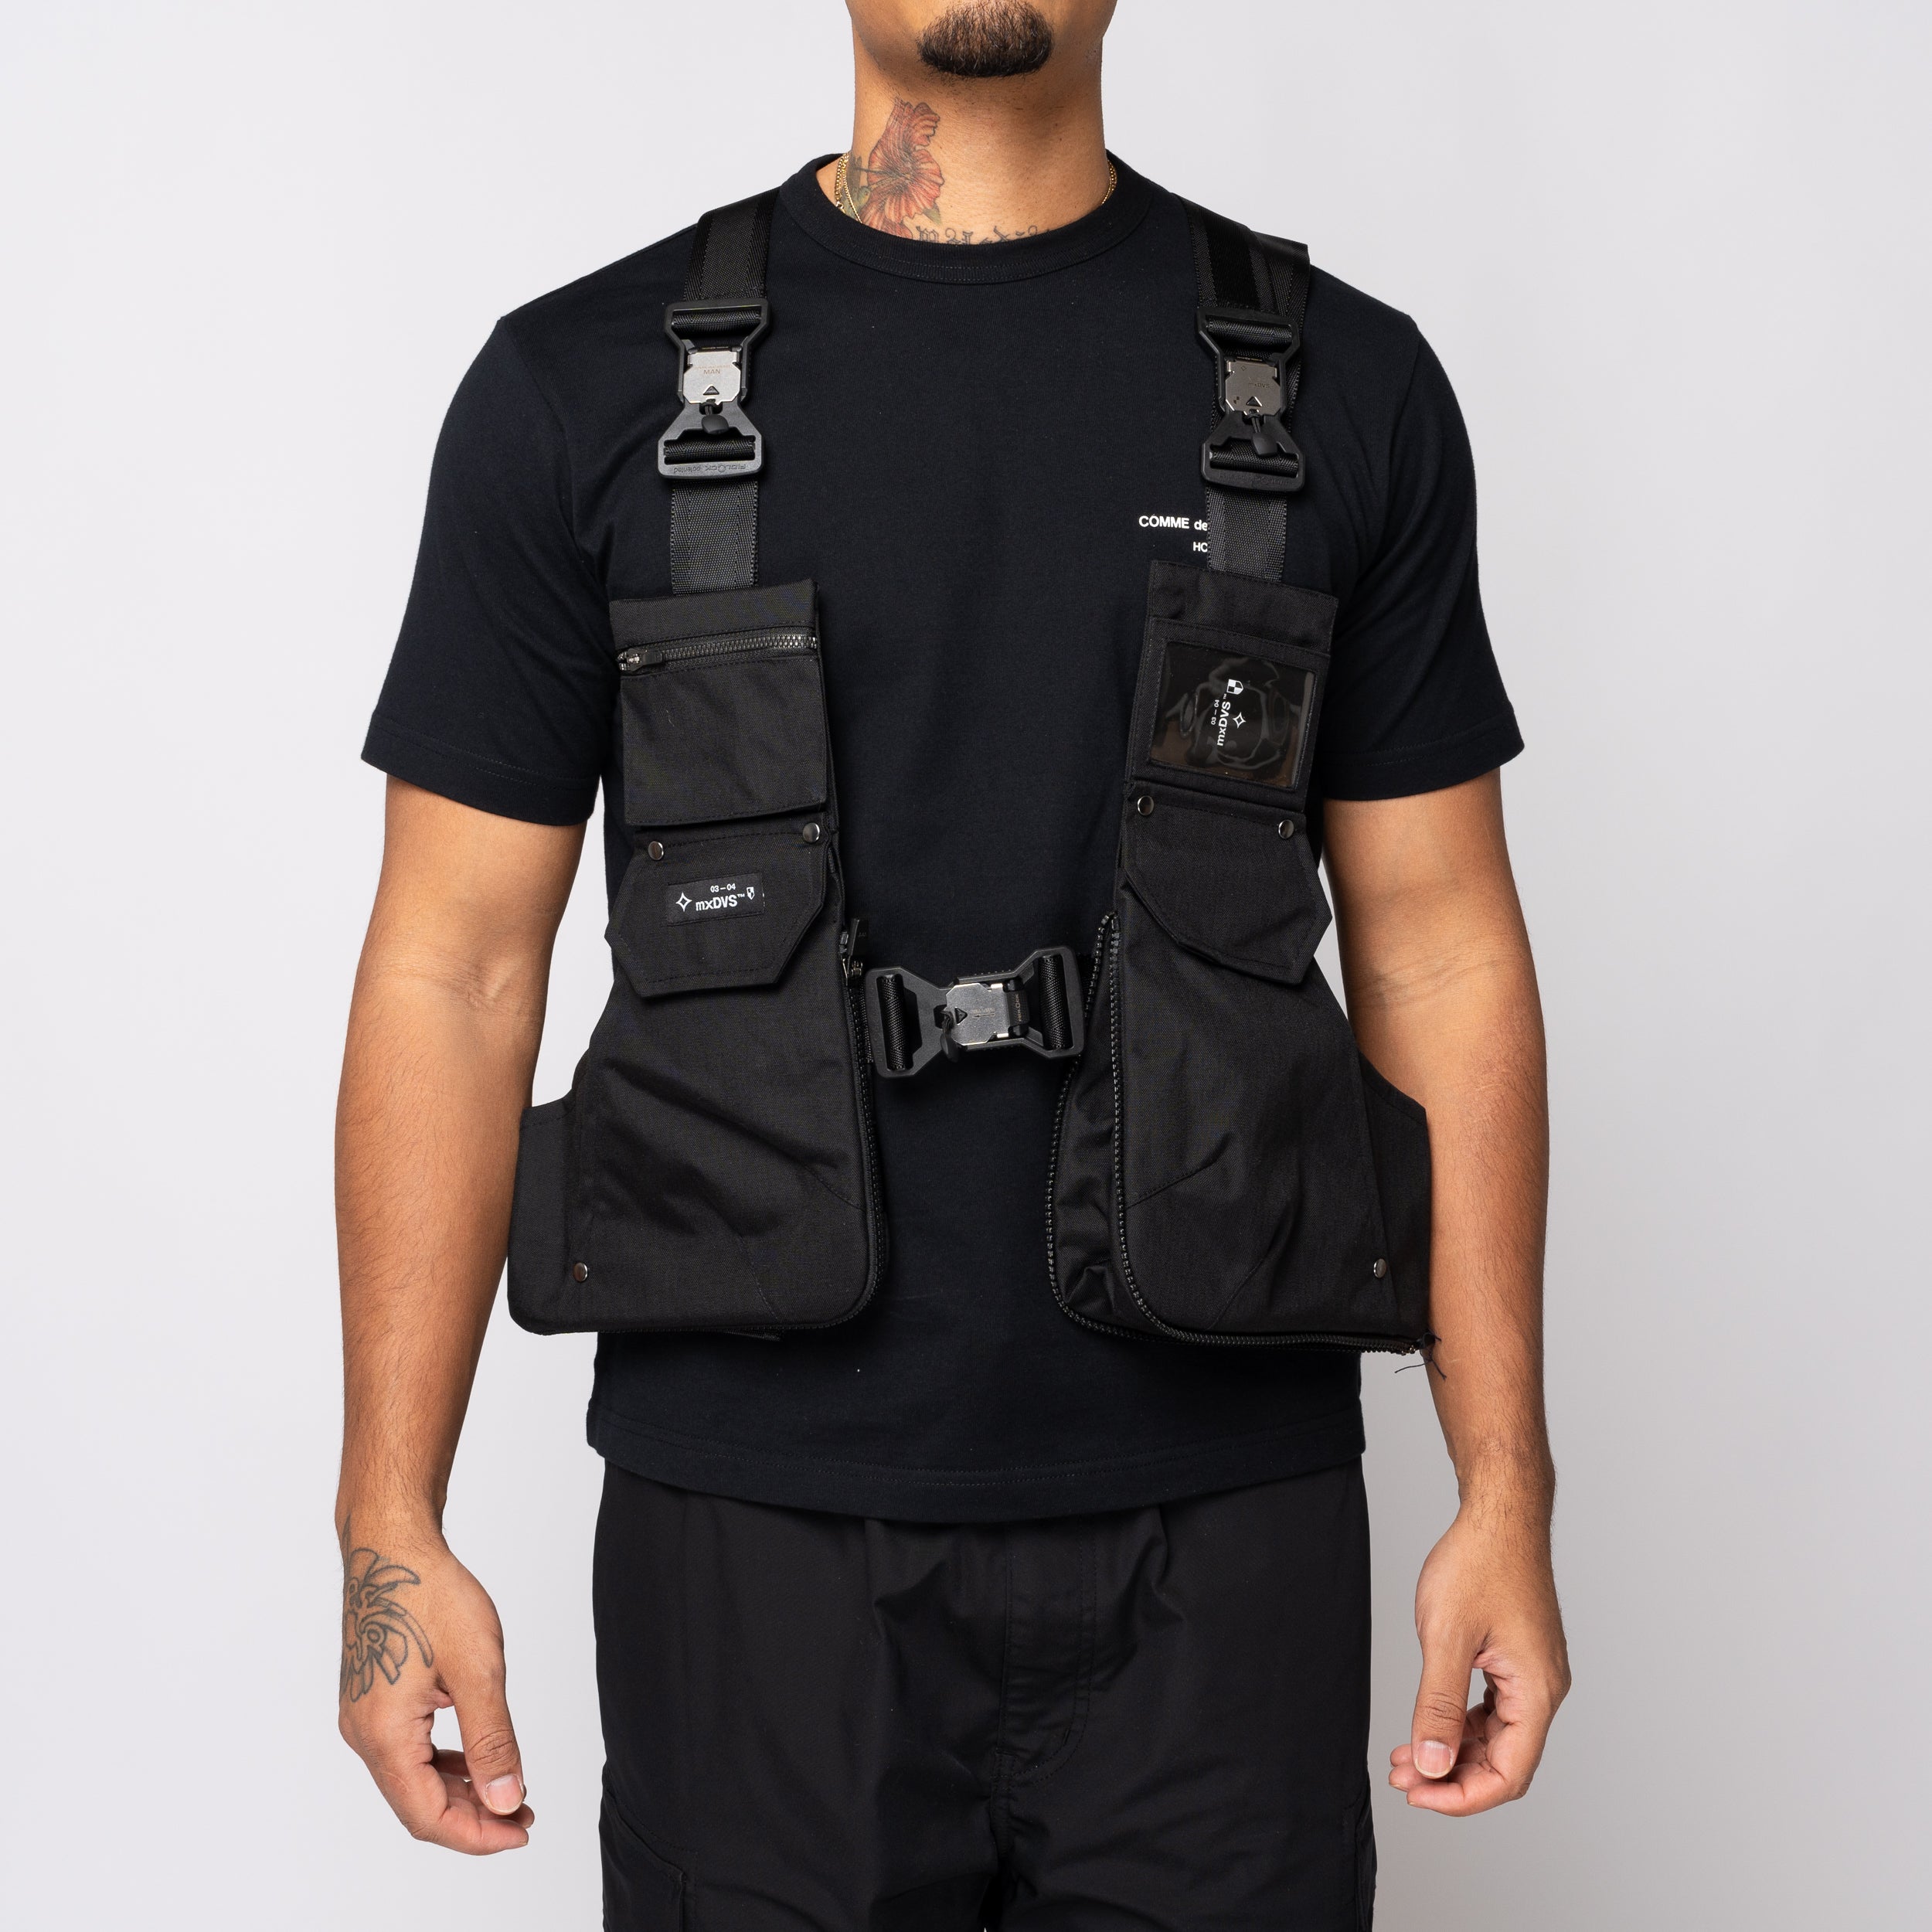 Stepney Workers Club MXDVS Vest Black WM-K201-S24